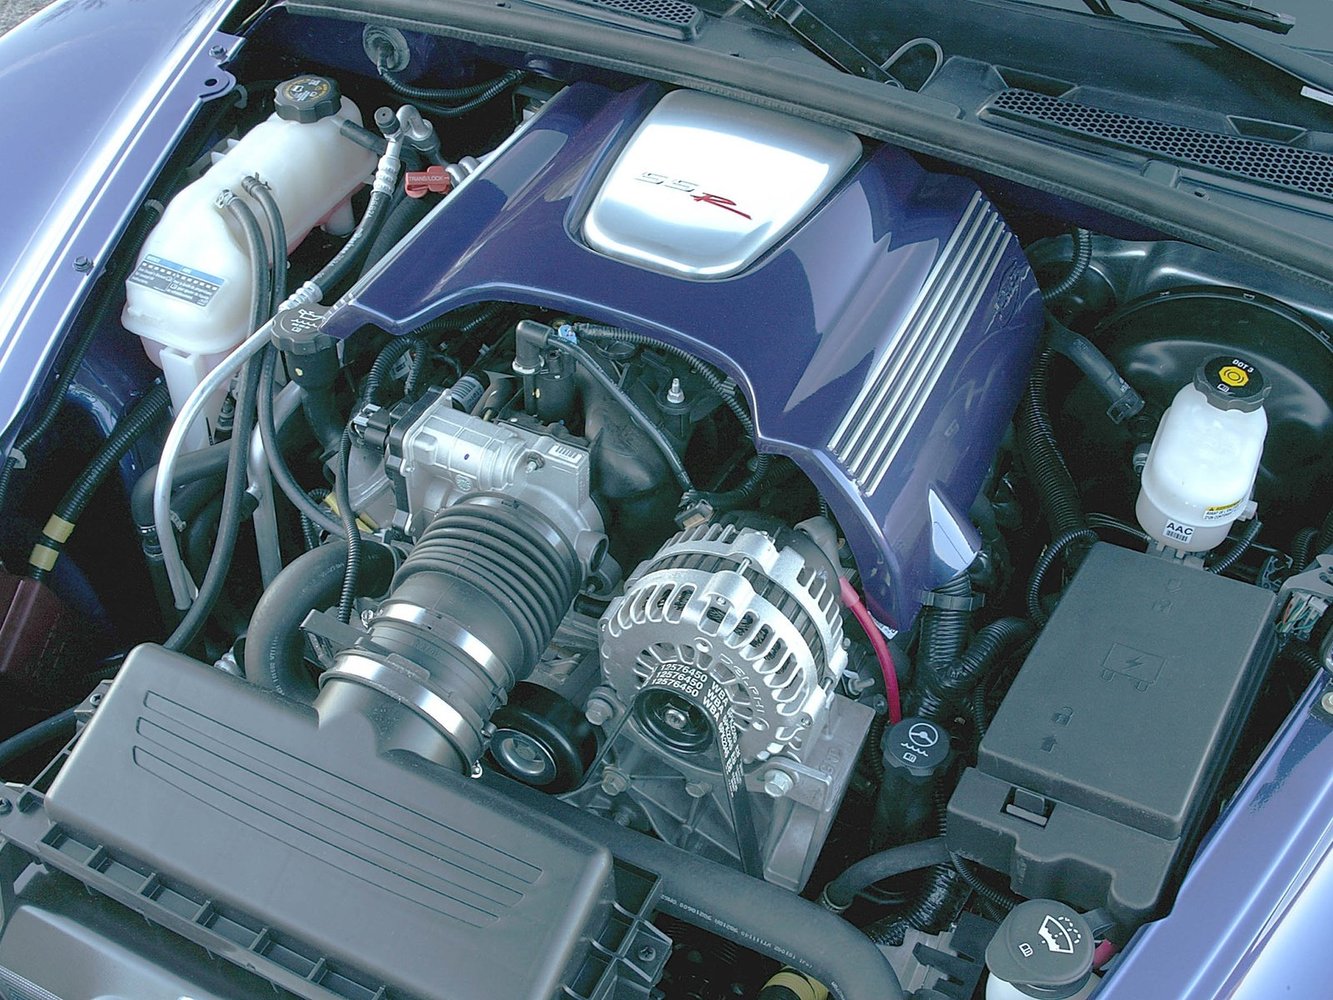 пикап Chevrolet SSR 2003 - 2006г выпуска модификация 5.3 AT (300 л.с.)